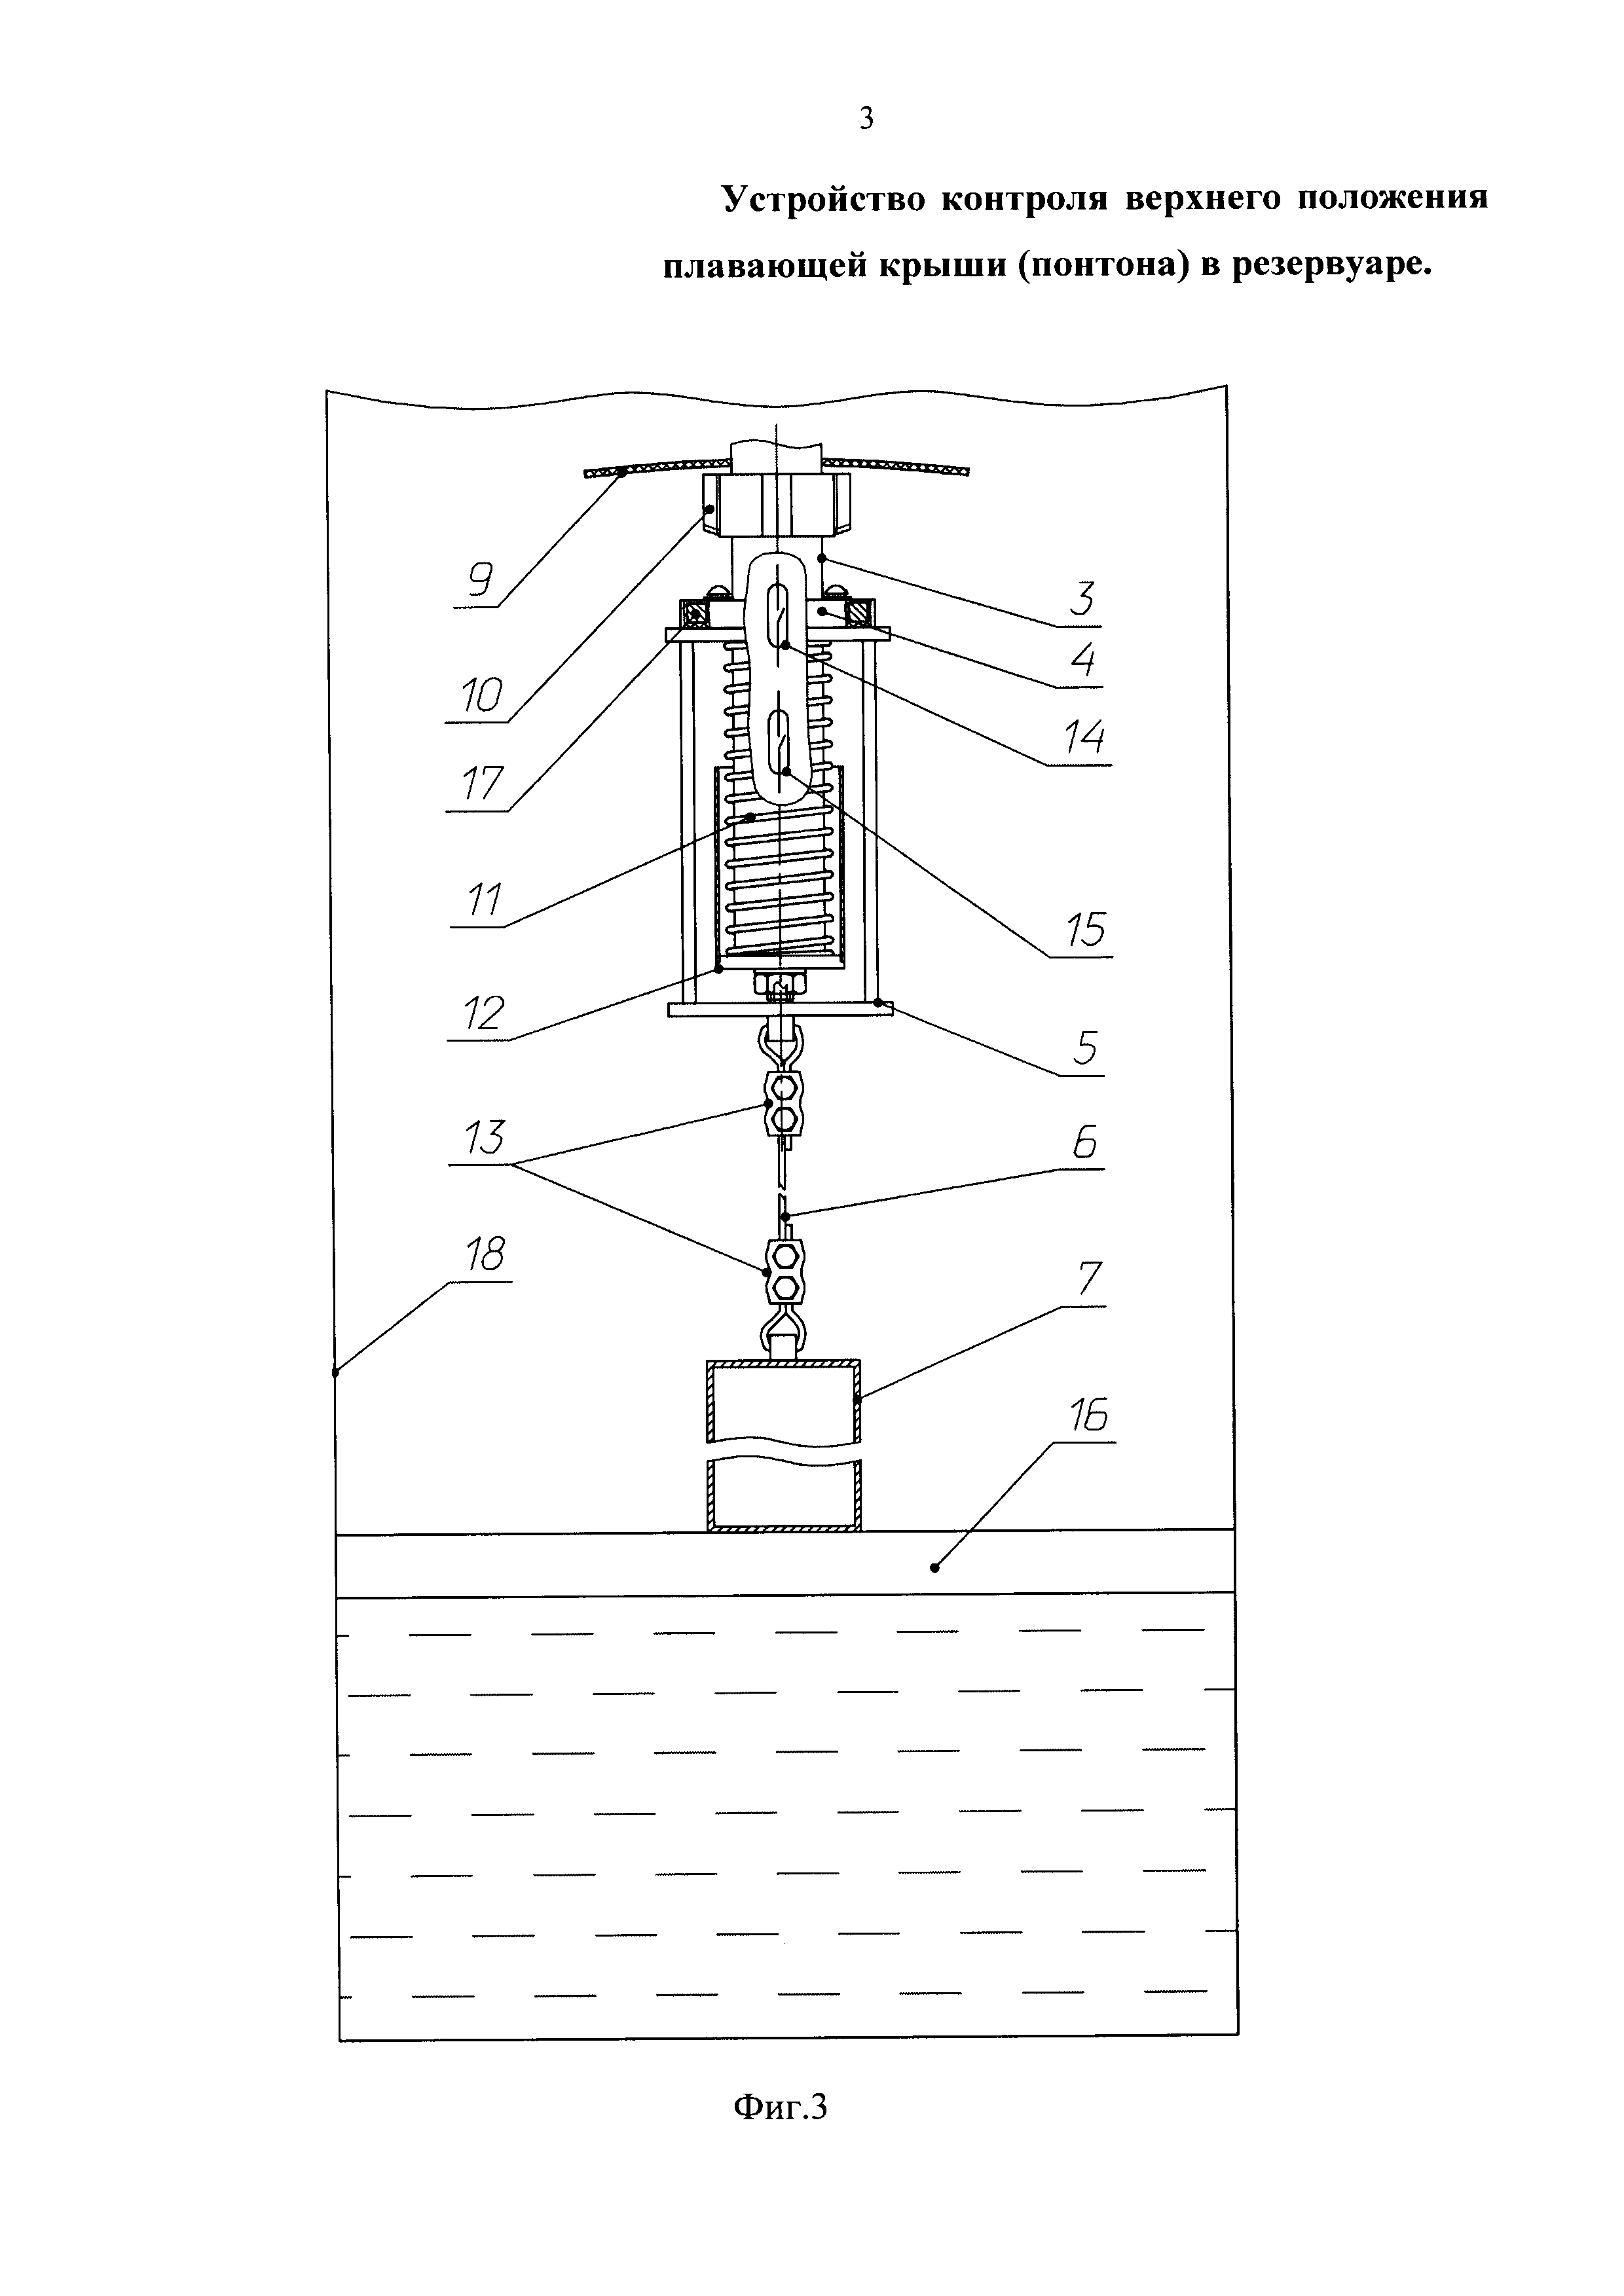 Устройство контроля верхнего положения плавающей крыши (понтона) в резервуаре